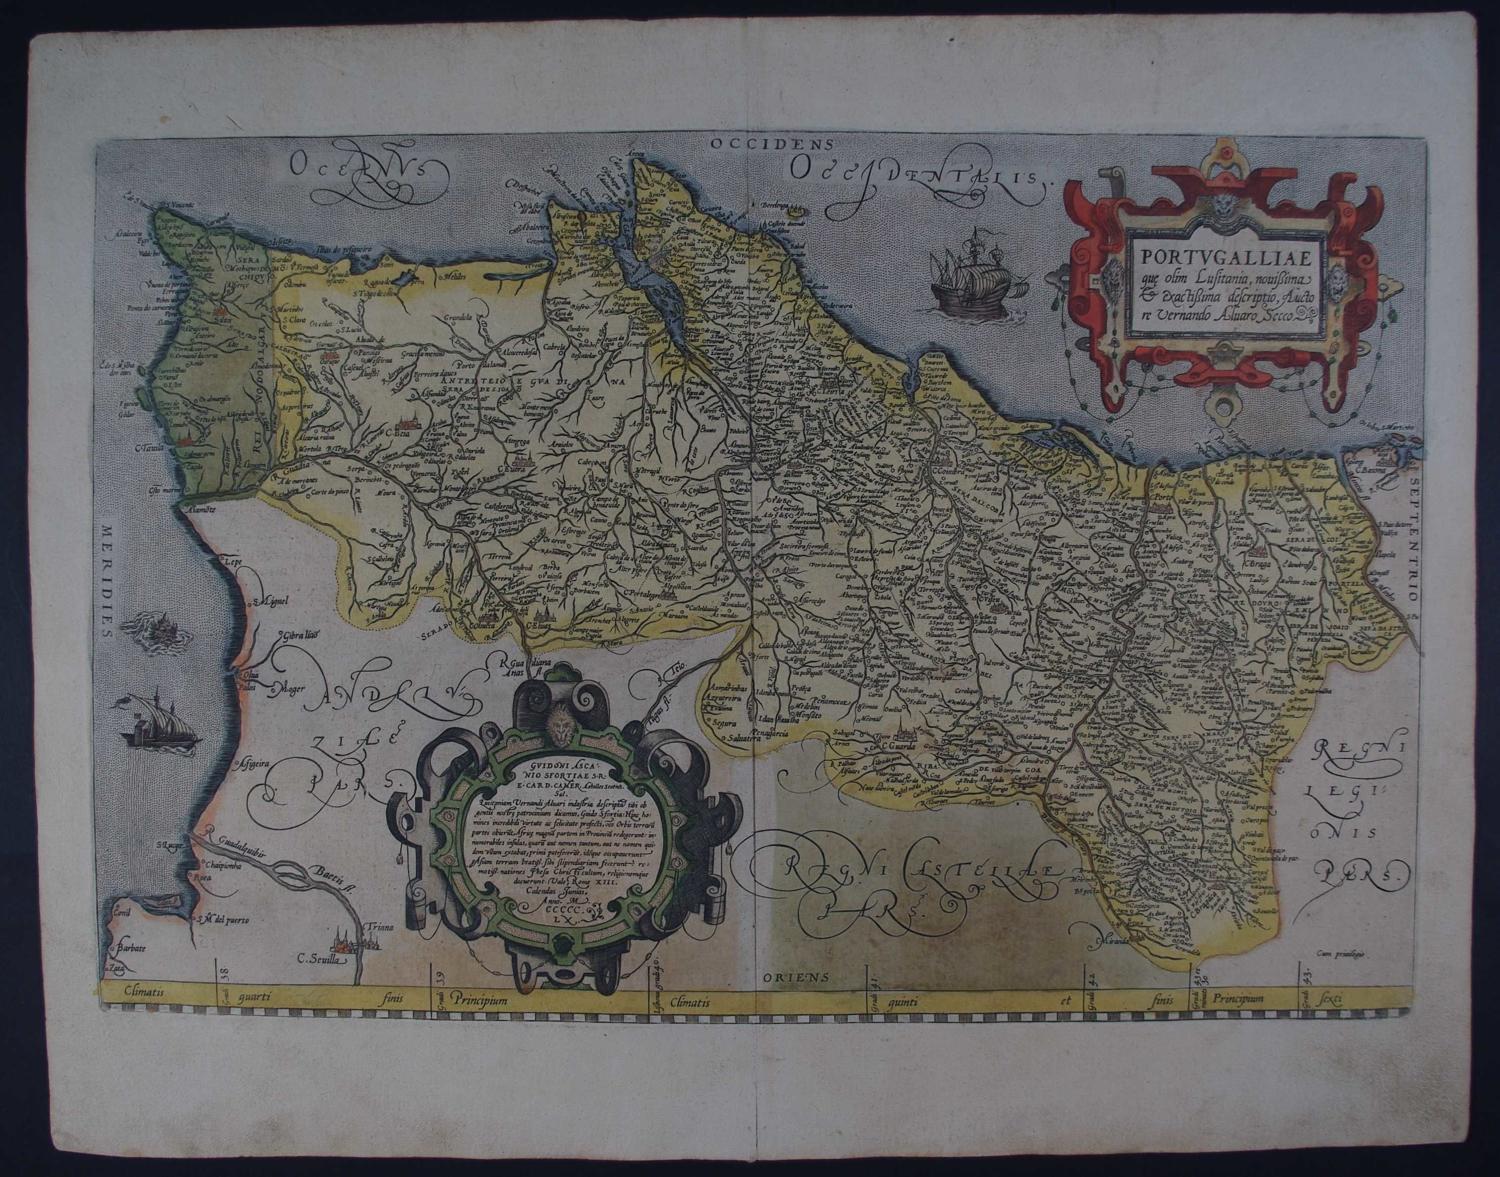 Portugalliae by Abraham Ortelius